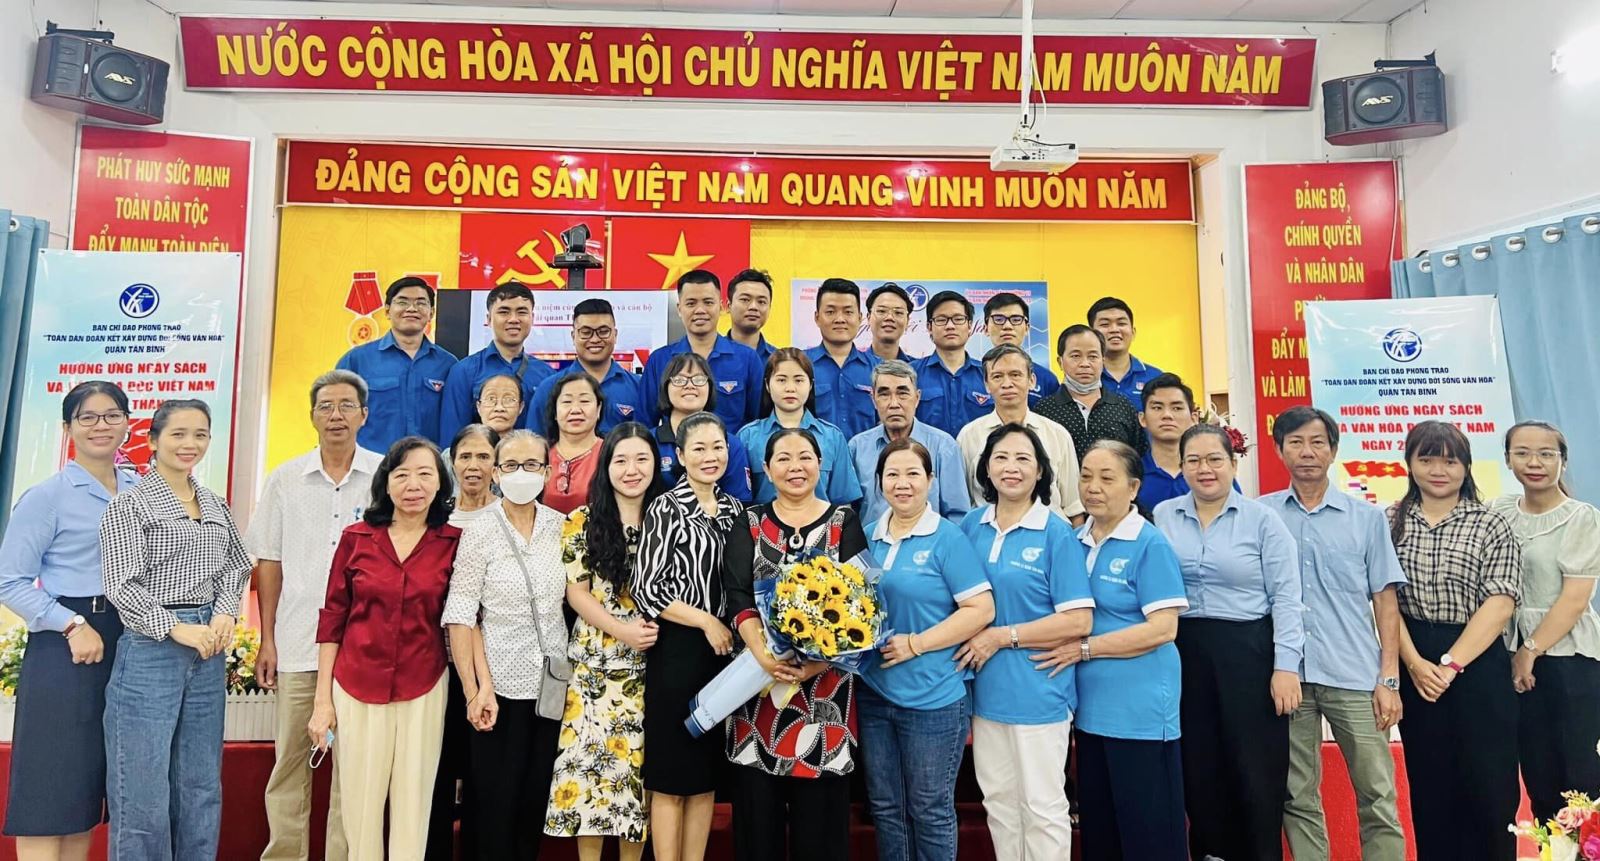 Quận Tân Bình: Tổ chức hoạt động hưởng ứng “Ngày Sách và Văn hóa đọc Việt Nam” năm 2023